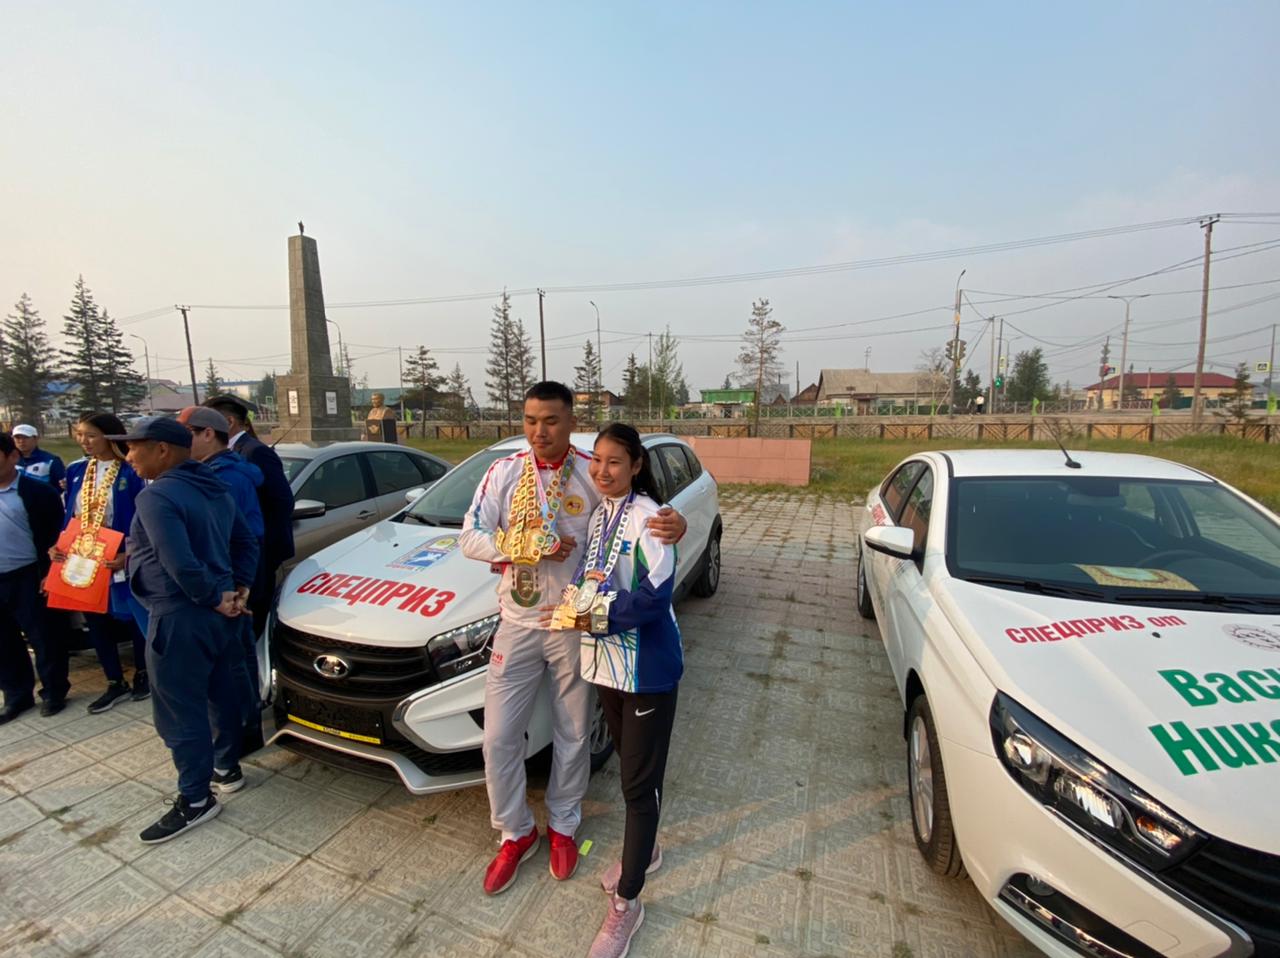  Валерия Олесова и Кай Адамов стали обладателями автомобилей 